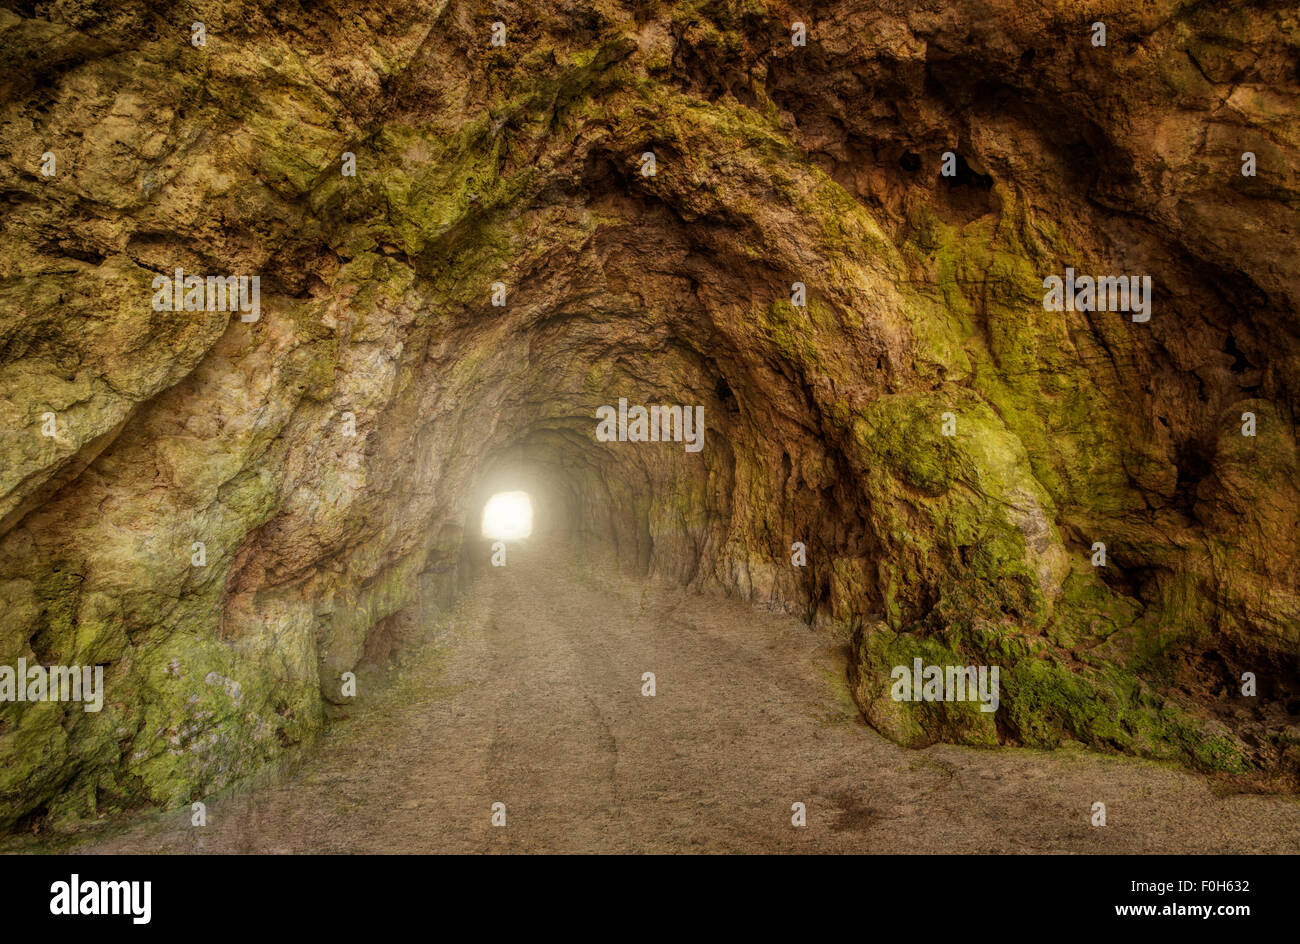 Underground cave Stock Photo